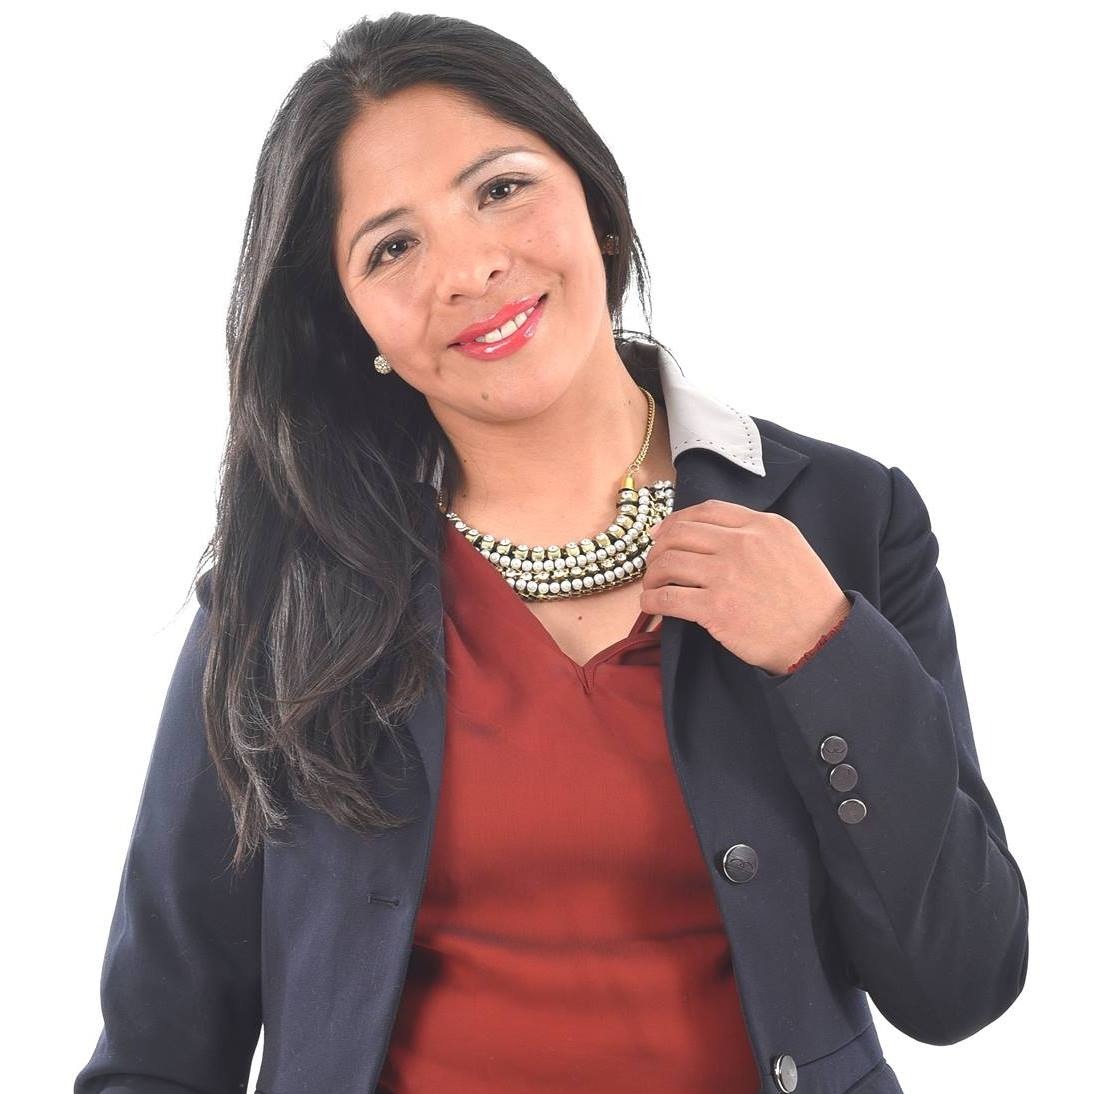 Nayma Enriquez Torrez es periodista con 15 años de experiencia. Actualmente es parte de la Red Uno de Bolivia, Palabra de Mujer y Co-autora del libro Días de Furia.